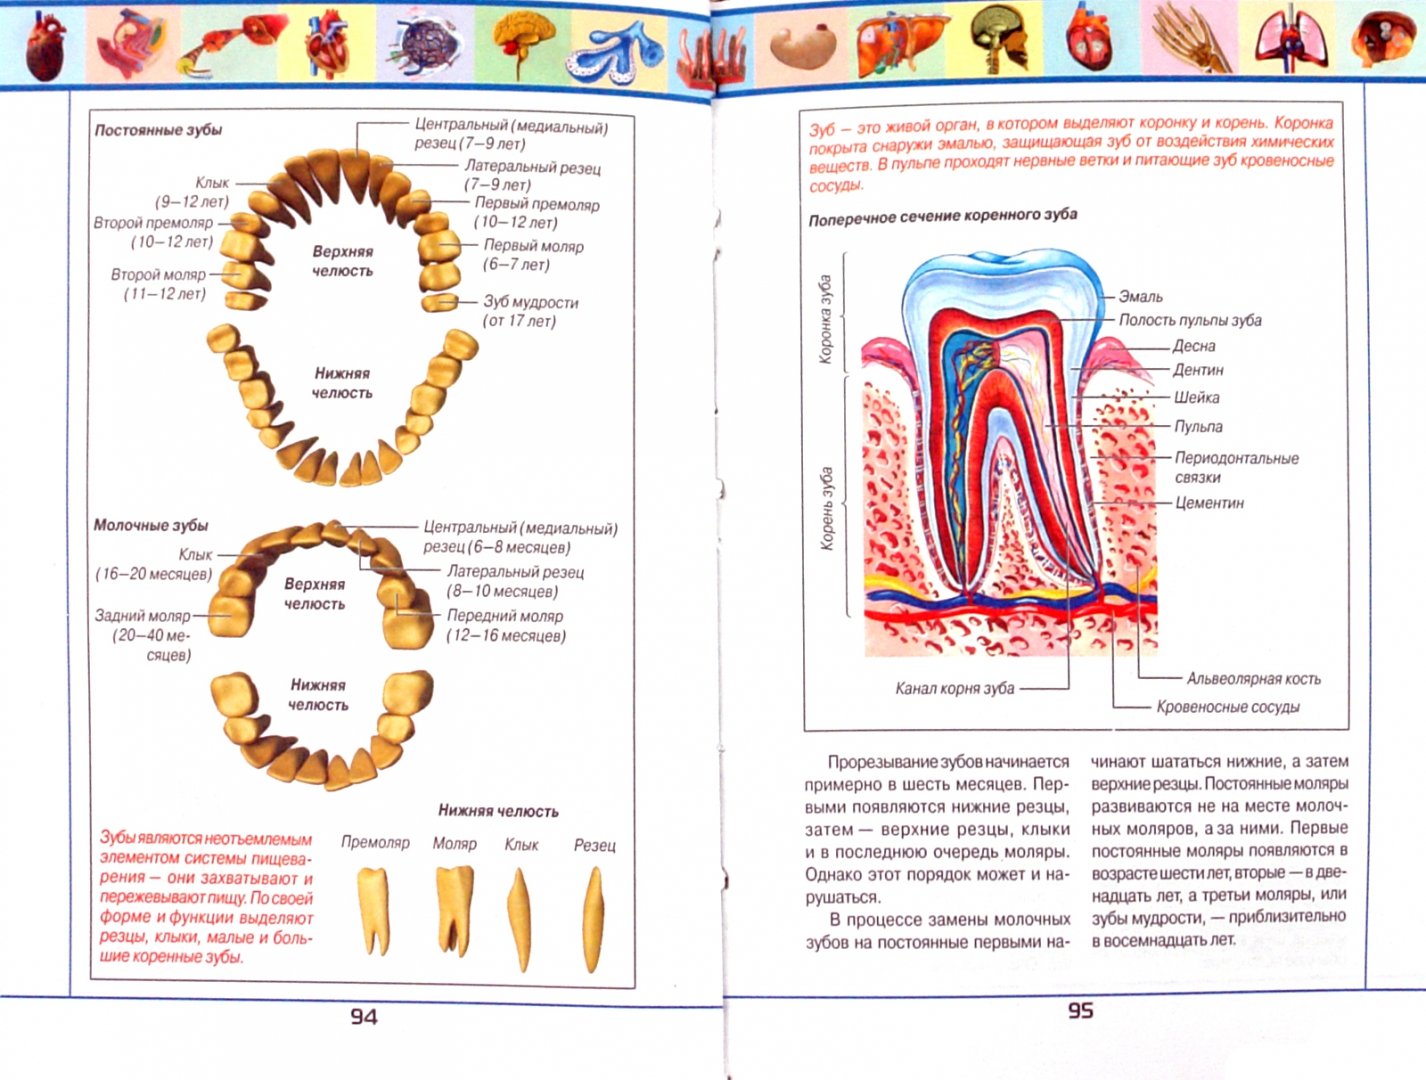 Иллюстрация 1 из 6 для Анатомический атлас | Лабиринт - книги. Источник: Лабиринт